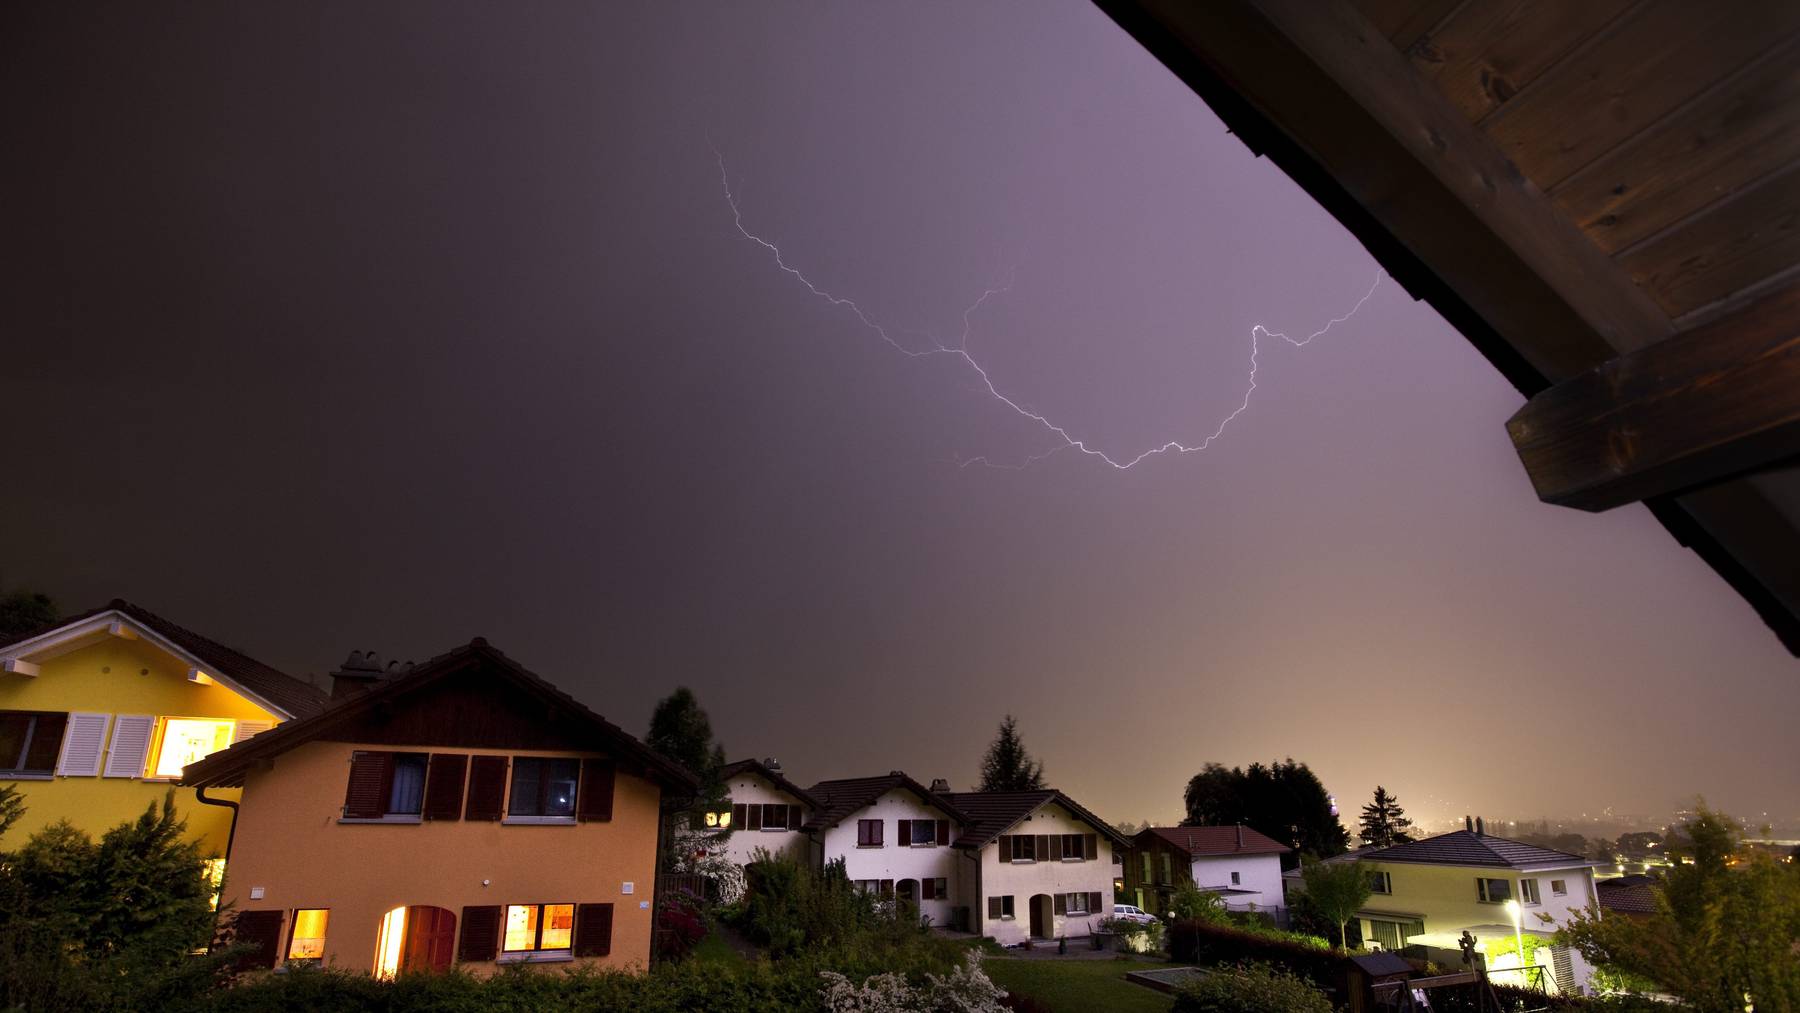 Ein Blitz erstrahlt am Dienstag, 25. Mai 2010, am naechtlichen Himmel ueber einer Wohnsiedlung in Igis im Churer Rheintal. Nach dem ersten Hitzetag in diesem Jahr mit Hoechtstemperaturen von ueber 30 Grad zieht am spaeten Dienstagabend ein kraeftiges Gewitter ueber das Churer Rheintal hinweg.